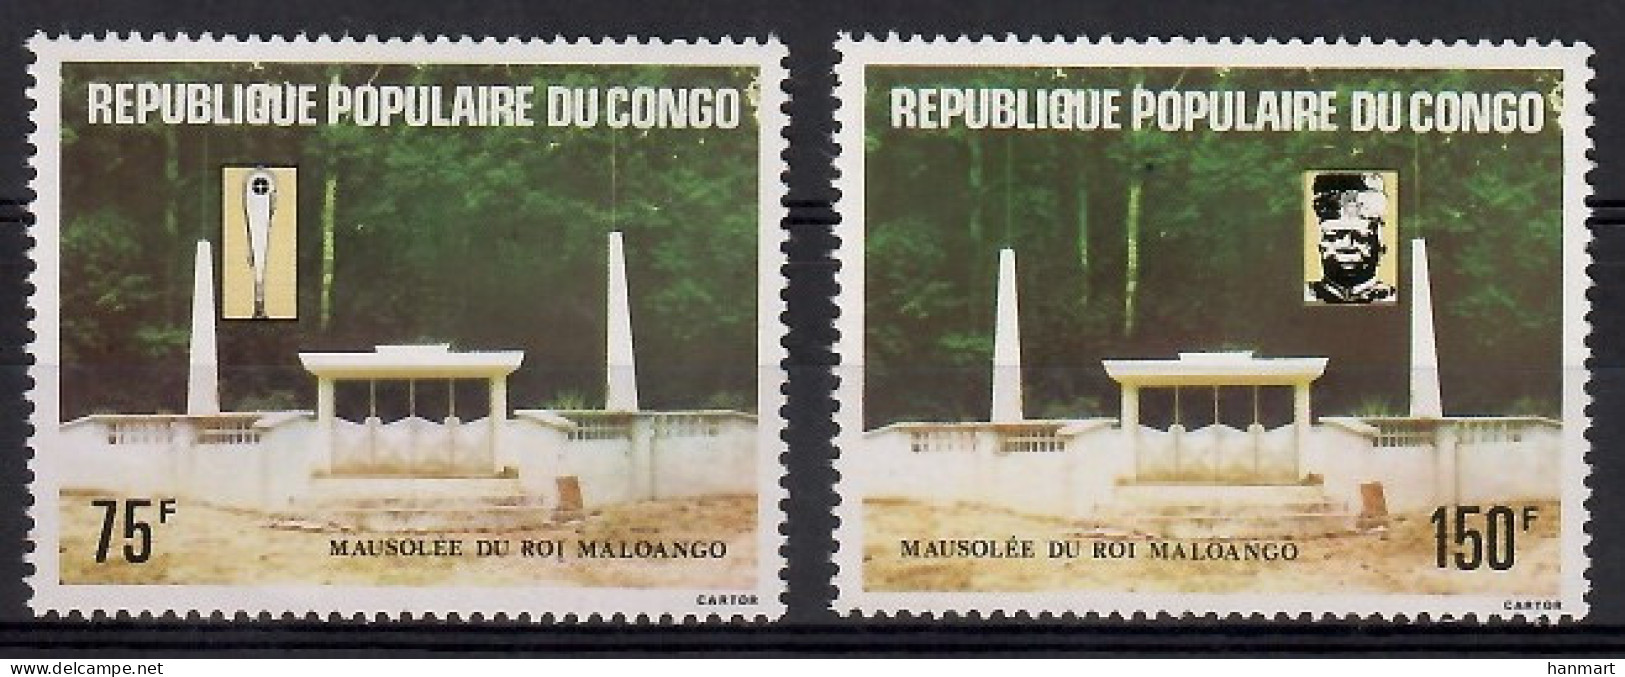 Congo, Republic (Brazzaville) 1981 Mi 825-826 MNH  (ZS6 CNG825-826) - Scultura